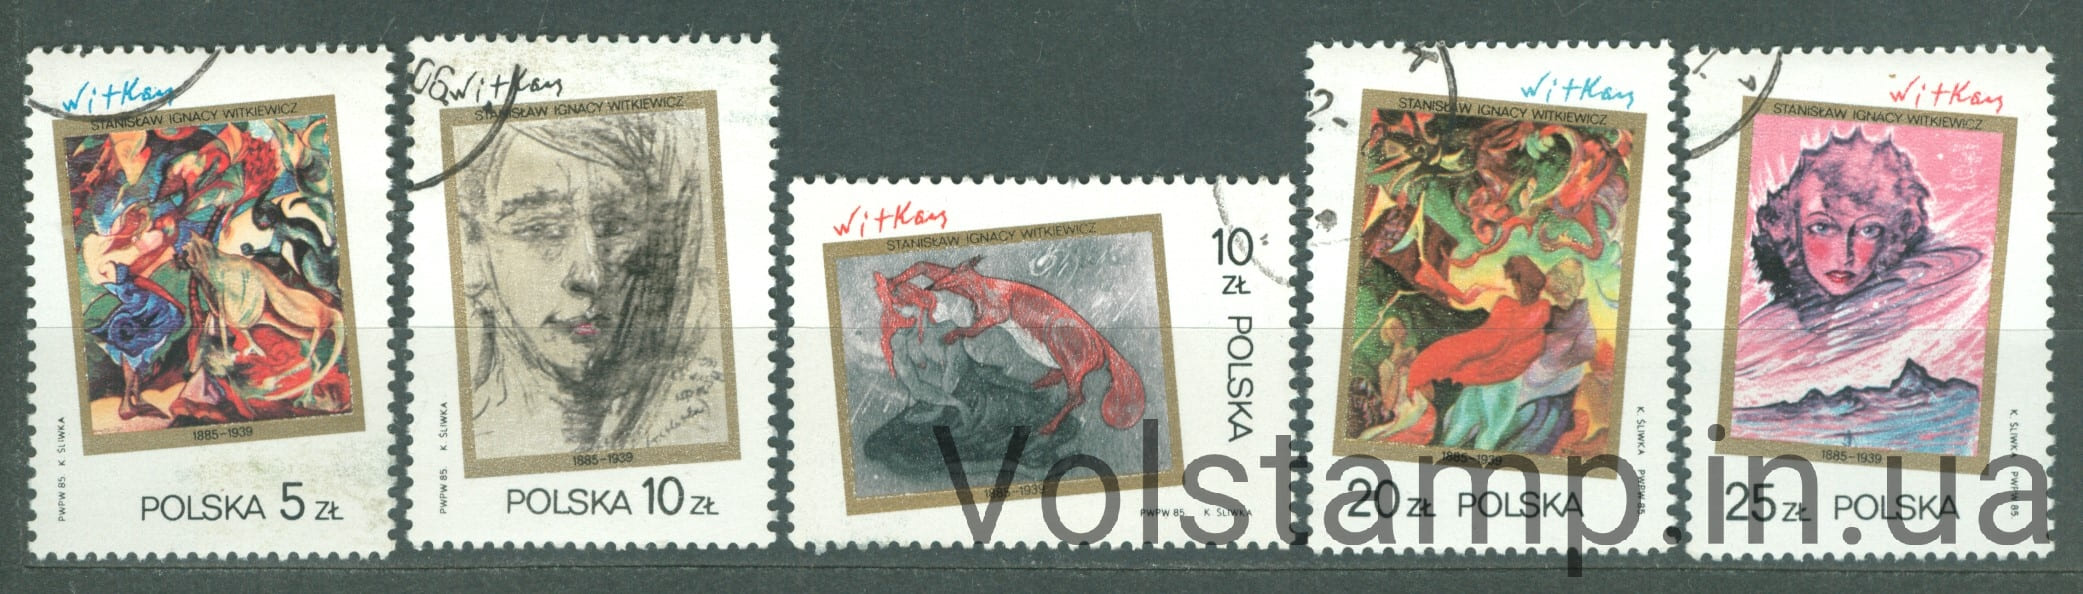 1985 Польша Серия марок (Картины Станислава Игнация Виткевича, искусство) Гашеные №3007-3011